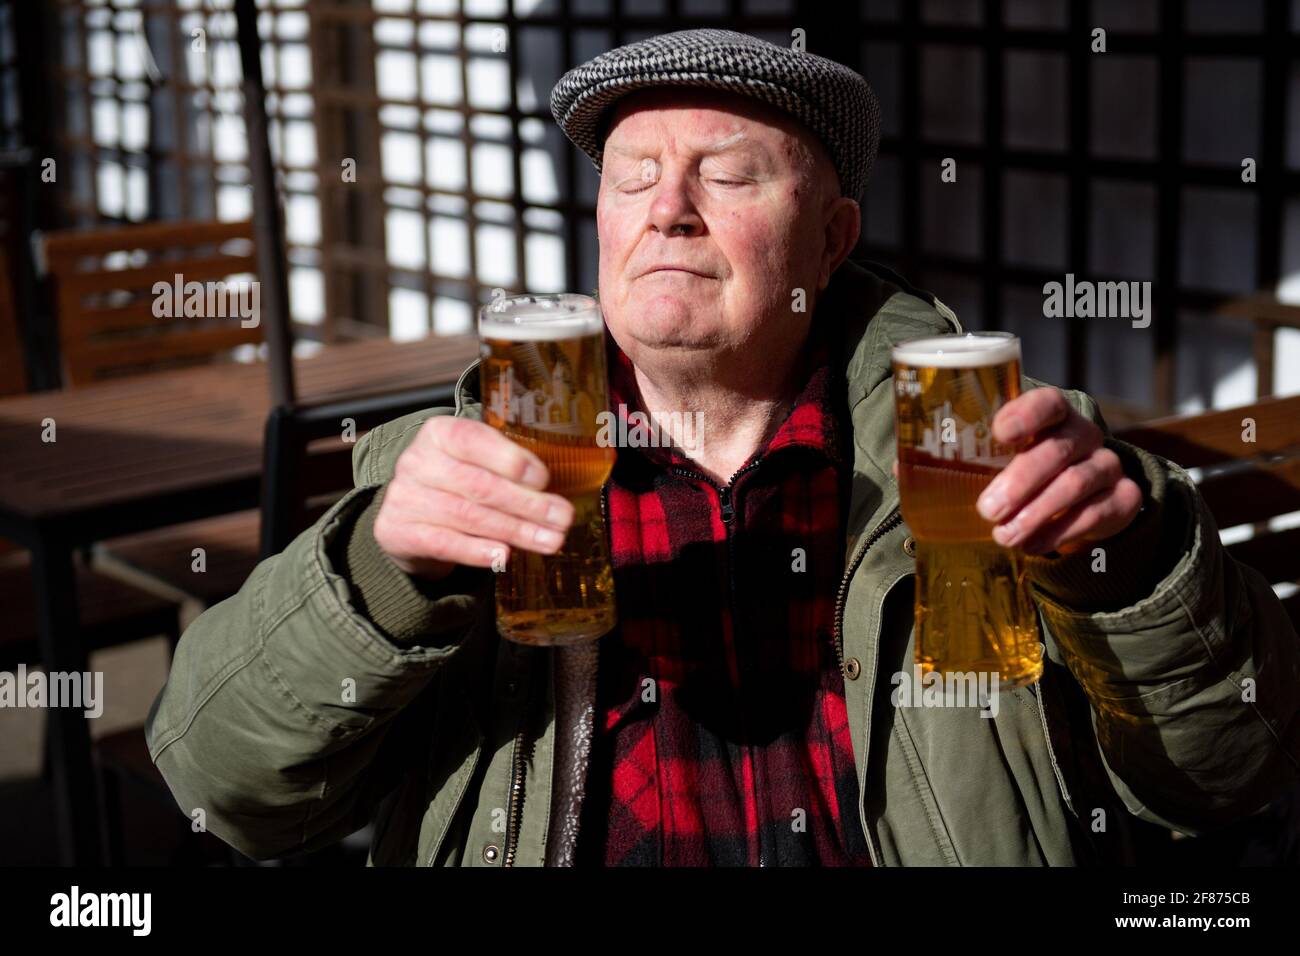 John Witts genießt einen Drink bei der Wiedereröffnung des Figure of Eight Pubs in Birmingham, während England mit der weiteren Lockerung der Sperrbeschränkungen einen weiteren Schritt zurück in Richtung Normalität unternimmt. Bilddatum: Montag, 12. April 2021. Stockfoto